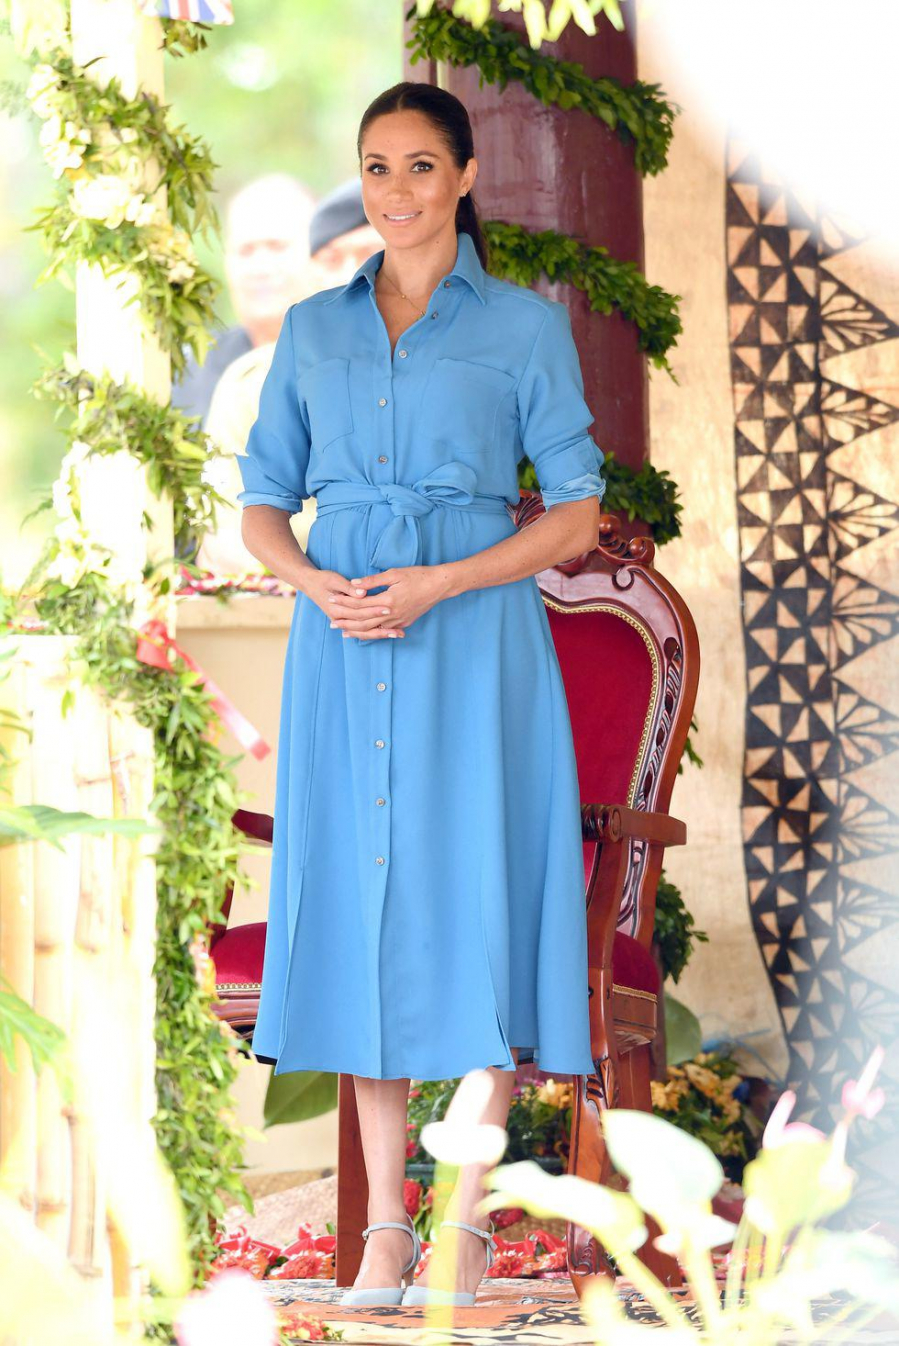 Chiếc đầm sơmi màu xanh thiên thanh này chính là một trong những mẫu đầm tông sáng hiếm hoi mà Meghan Markle lựa chọn trong thời kì mang thai. Khoác lên mình bộ cánh nay, nữ Công tước xứ Sussex trở nên vô cùng nổi bật khi kết hợp với giày cao gót cùng tông màu.    